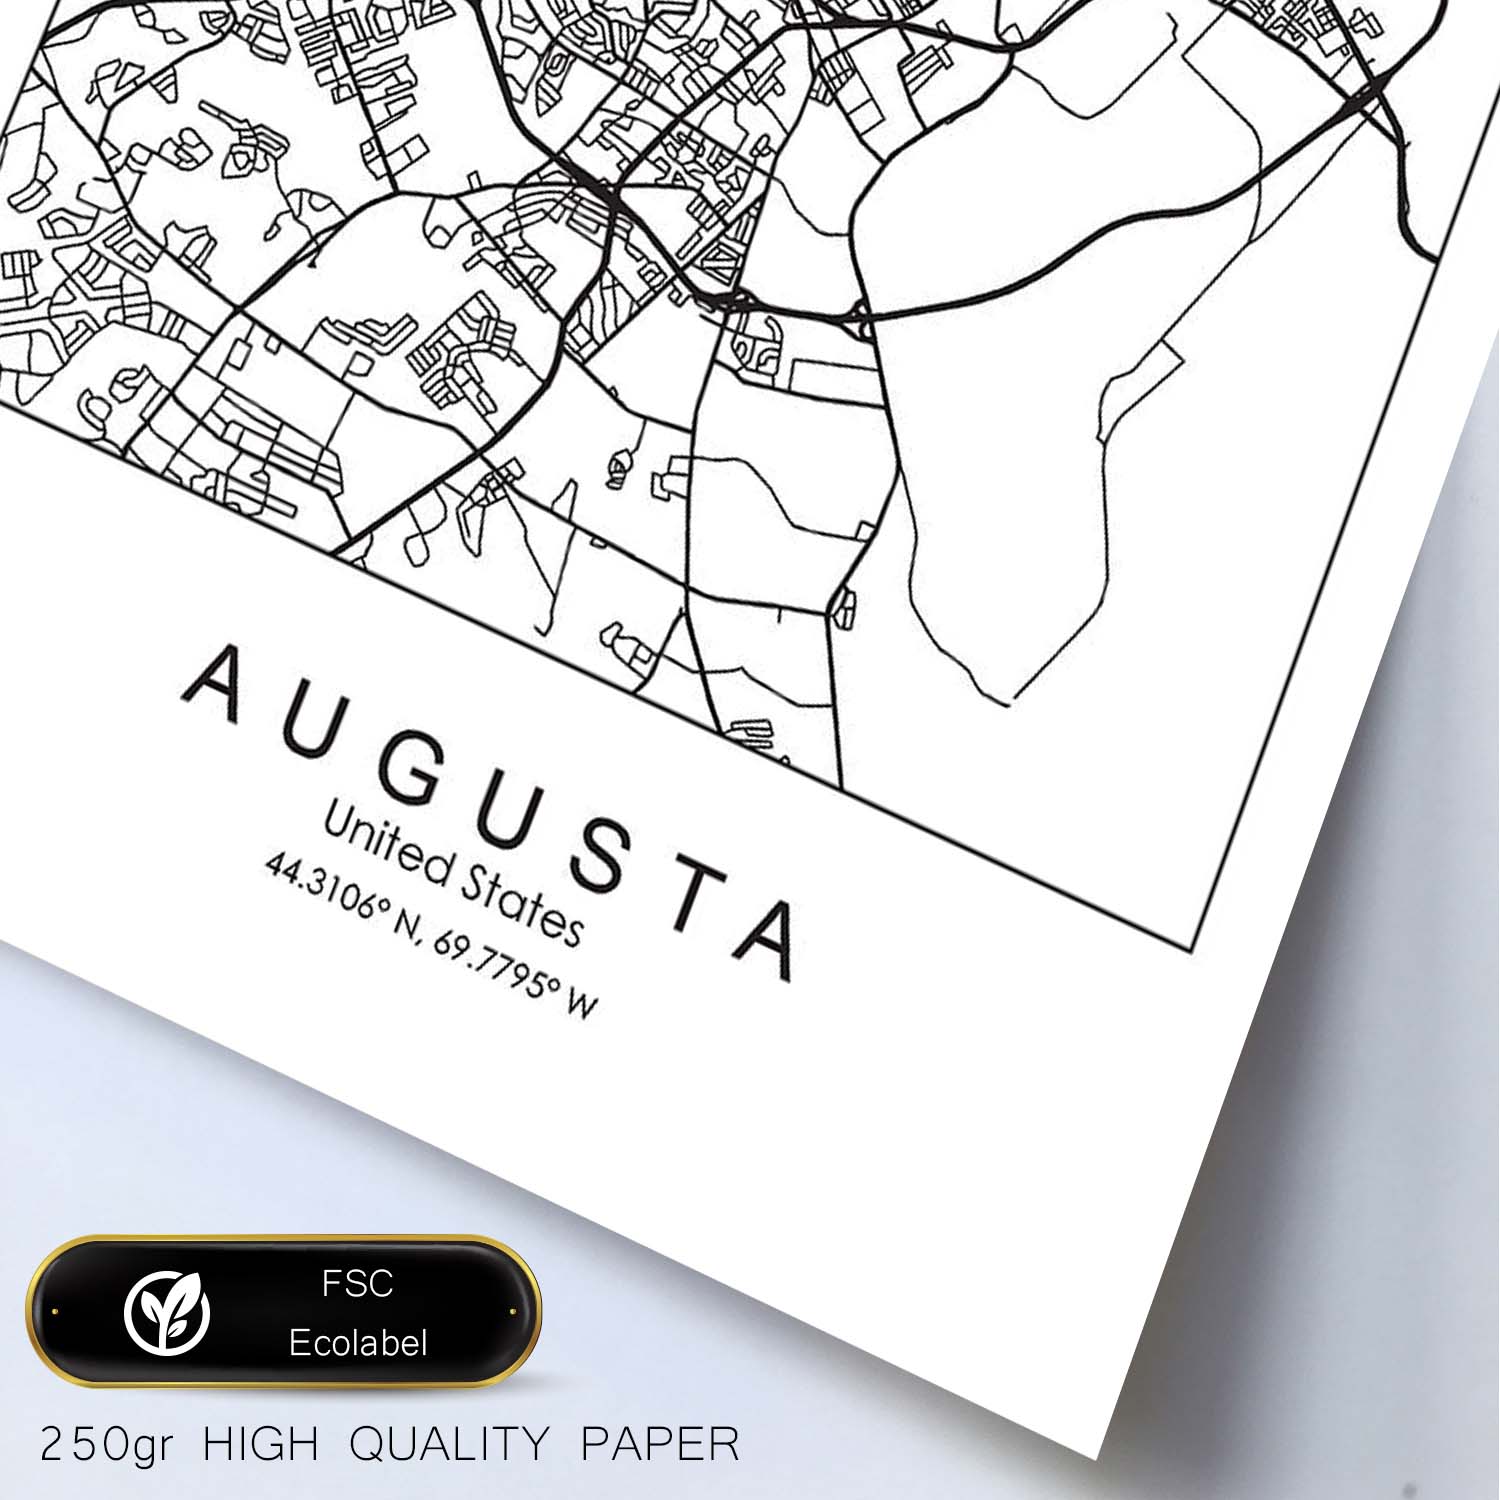 Poster con mapa de Augusta. Lámina de Estados Unidos, con imágenes de mapas y carreteras-Artwork-Nacnic-Nacnic Estudio SL